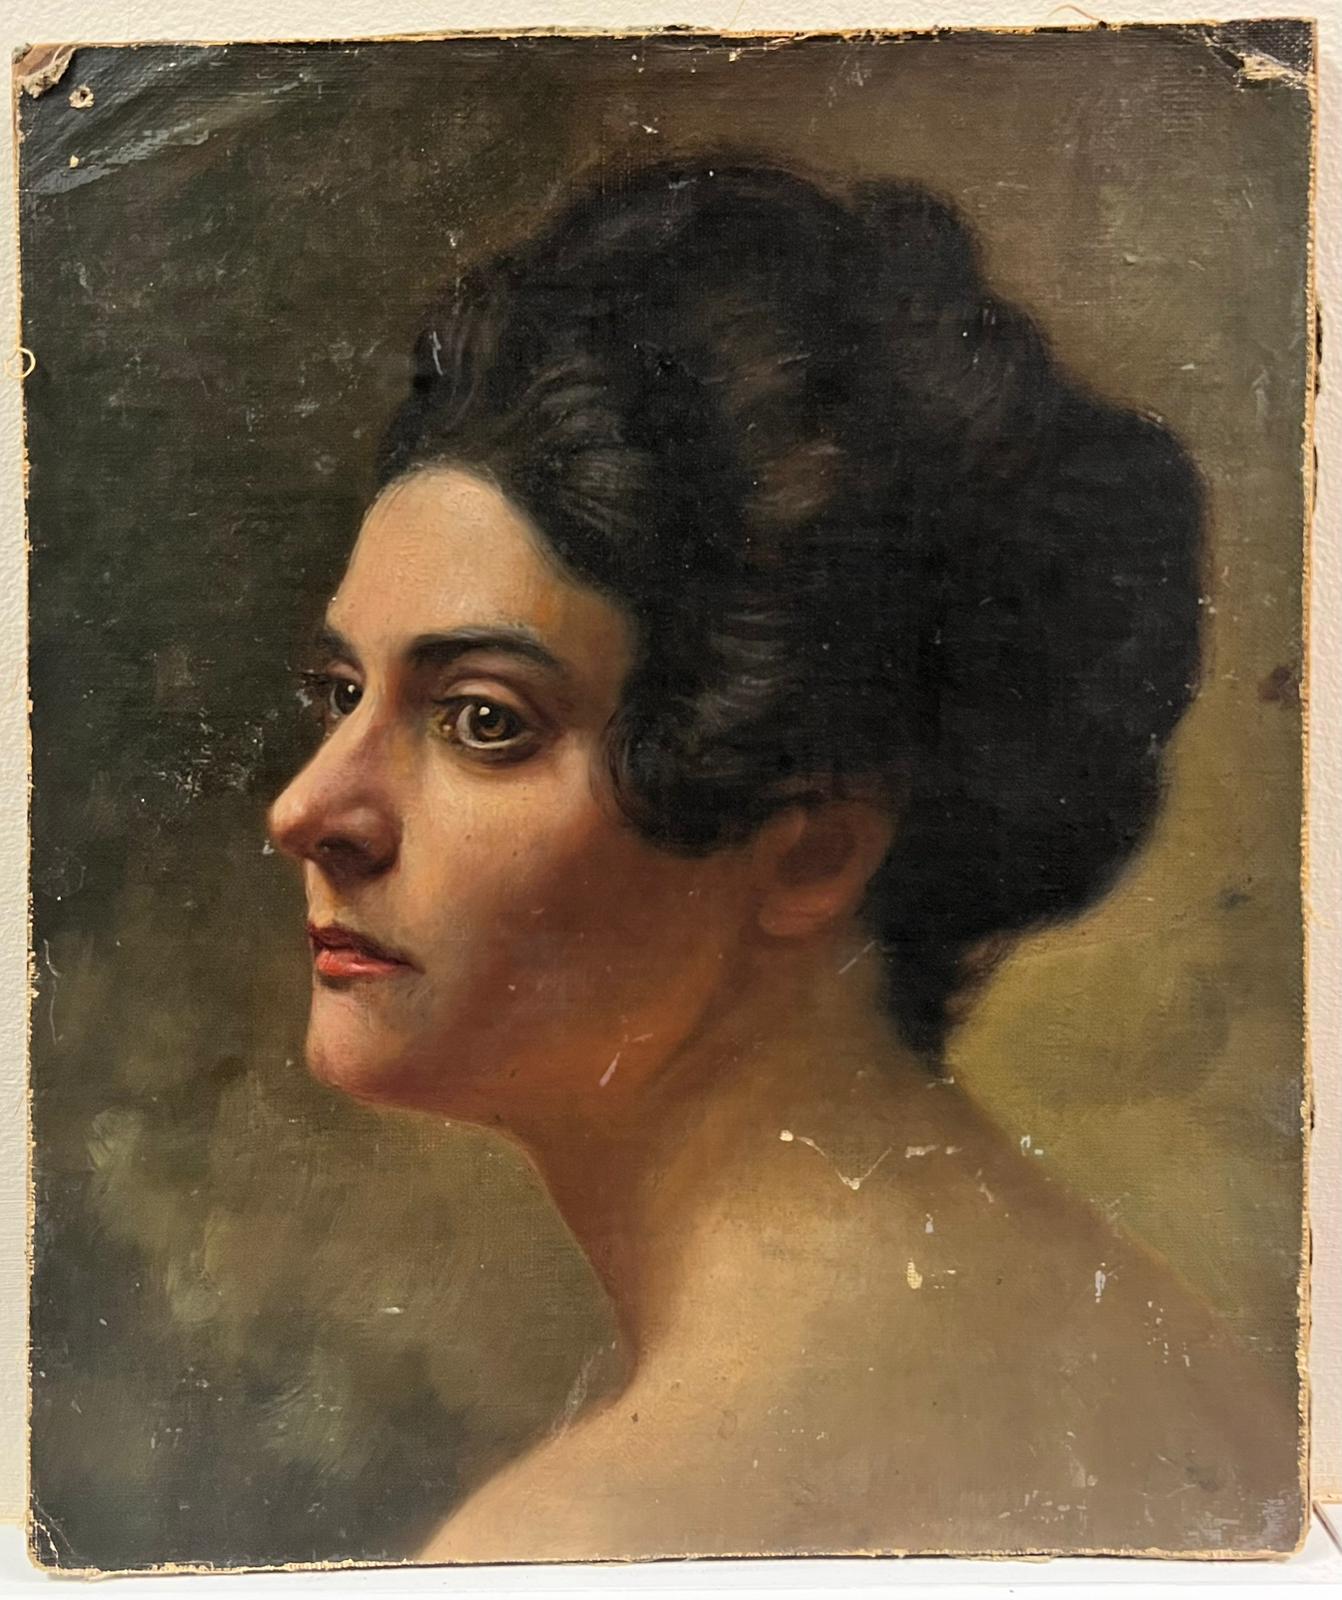 Portrait à l'huile du 19ème siècle de belle qualité représentant une femme réaliste française - Painting de French School